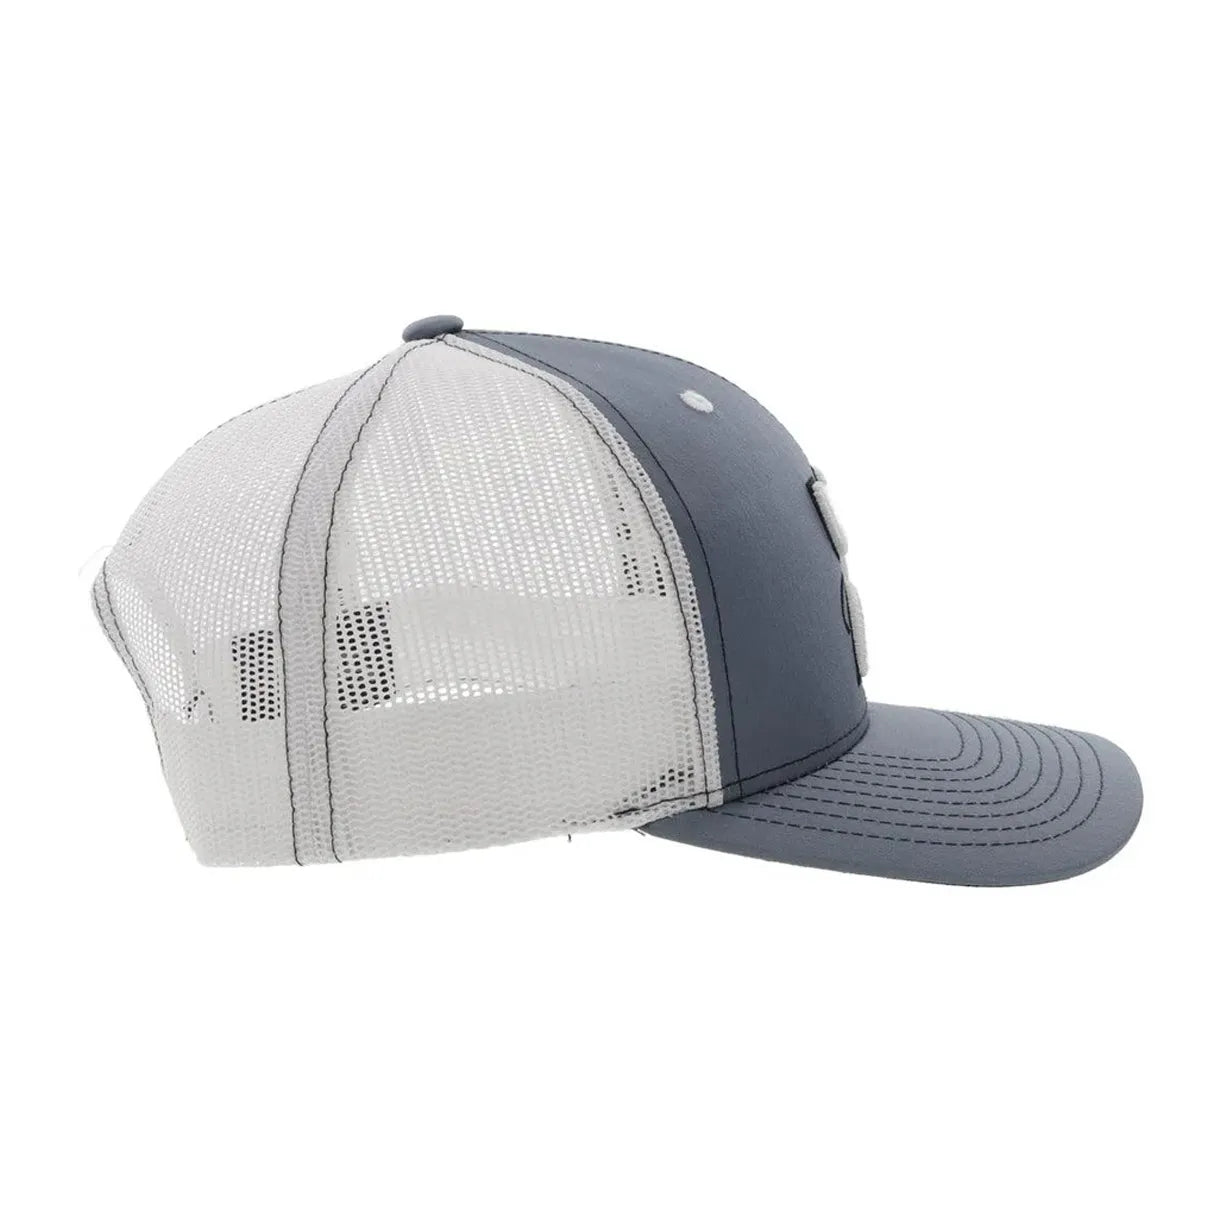 Hooey "Arc" Welder Grey/White Hat 2221T-GYWH